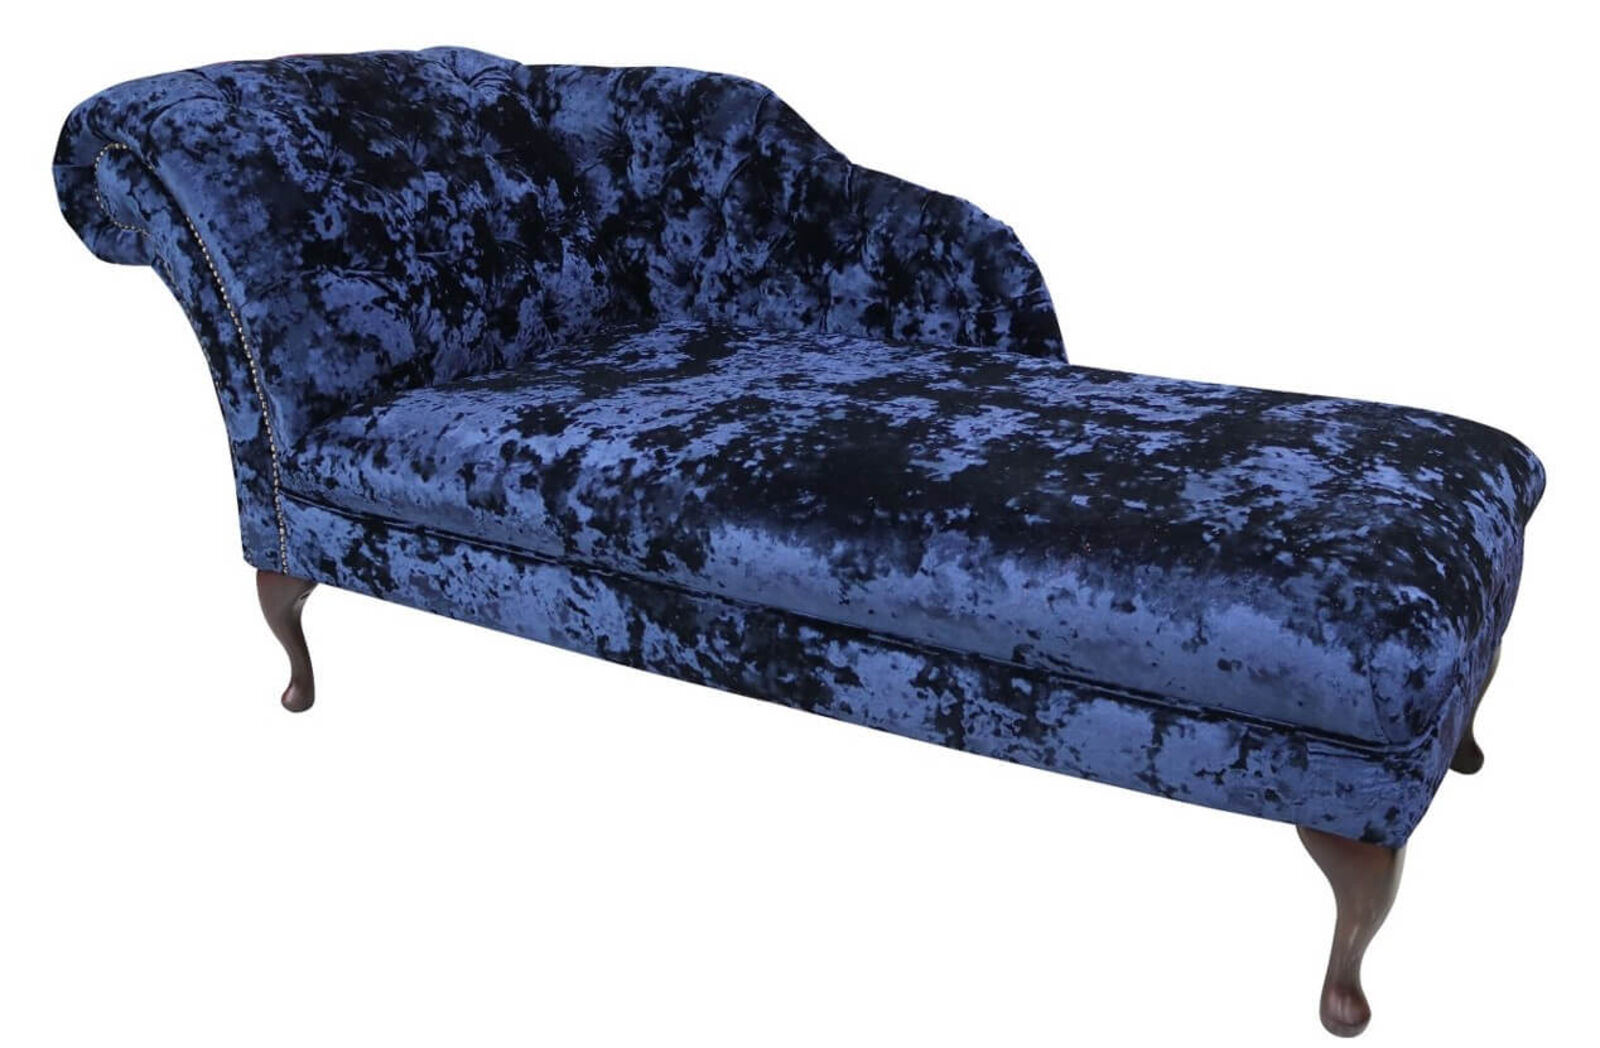 Product photograph of Chesterfield Velvet Chaise Lounge Day Bed Lustro Sapphire Blue Velvet from Designer Sofas 4U